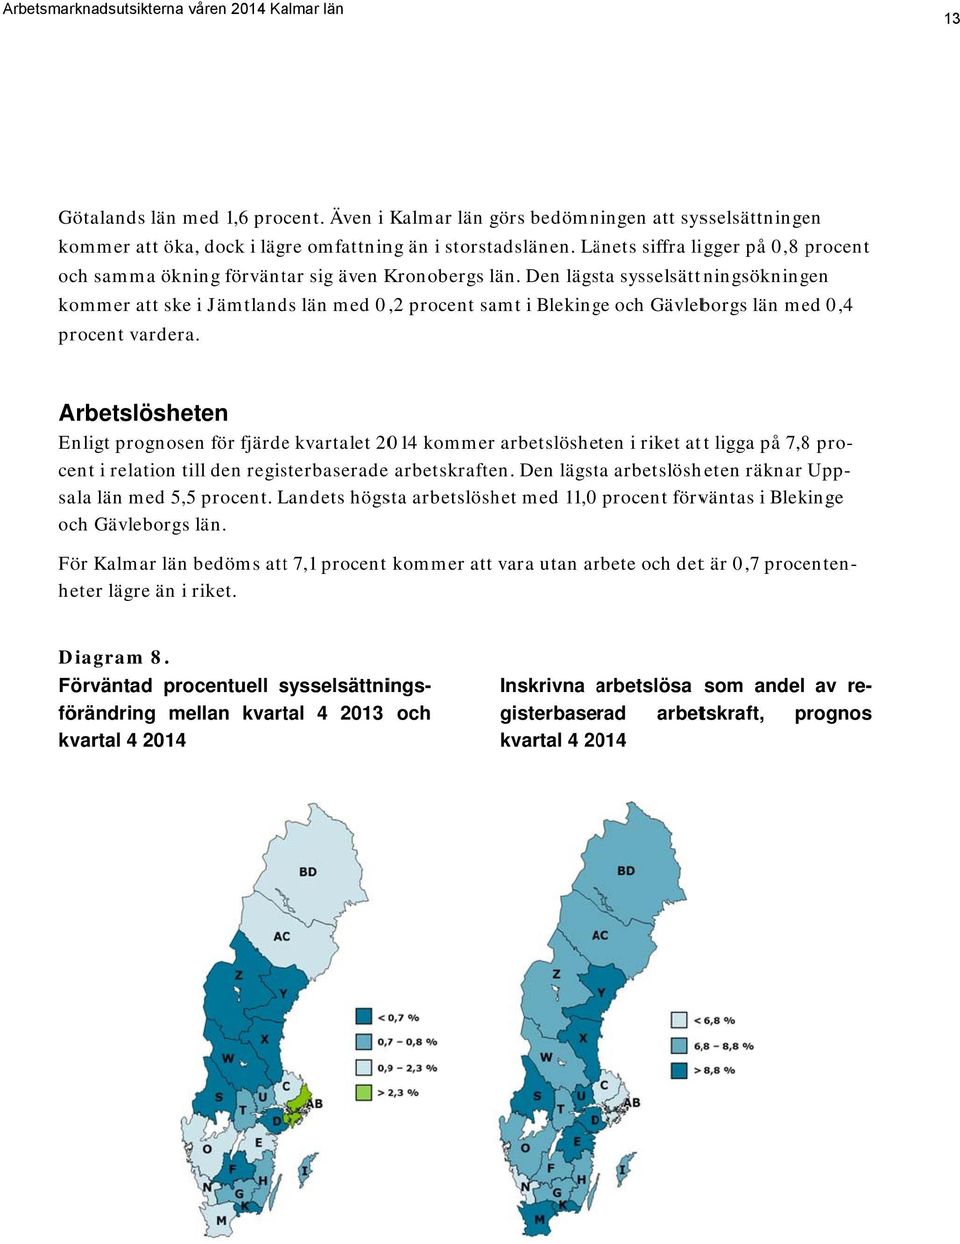 Den lägsta sysselsättningsökningen kommer att ske i Jämtlands län med 0,,2 procent samt i Blekinge och Gävleborgs län med 0,4 procent vardera. Diagram 8.